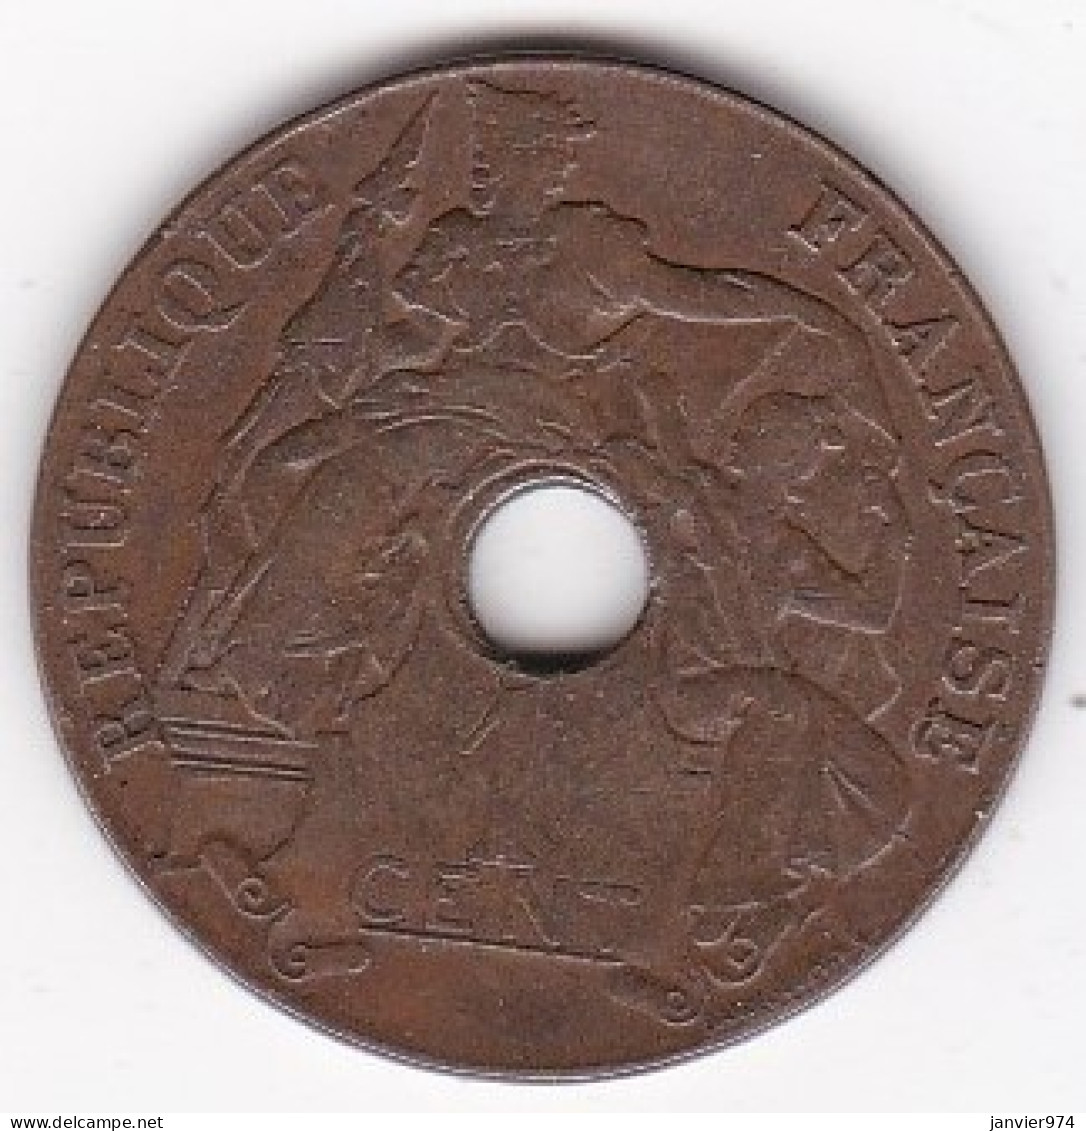 Indochine Française 1 Cent 1920 Sans Différent (San Francisco), Bronze , Lec# 81 - Indochine